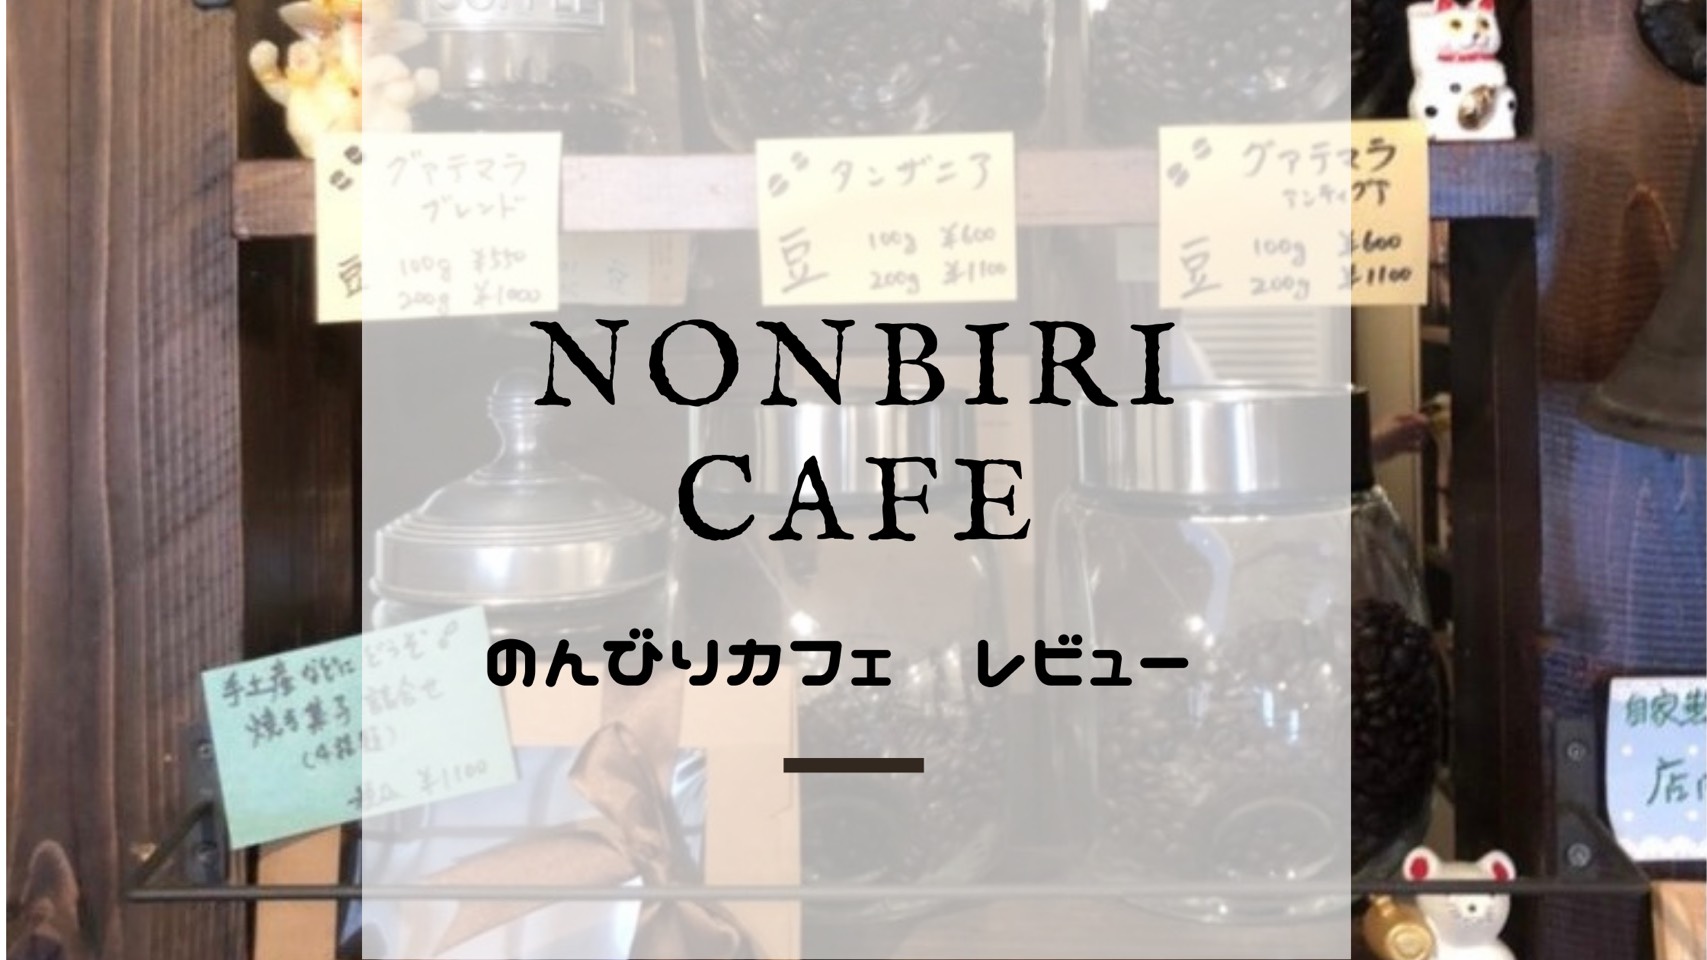 名古屋おしゃれカフェ